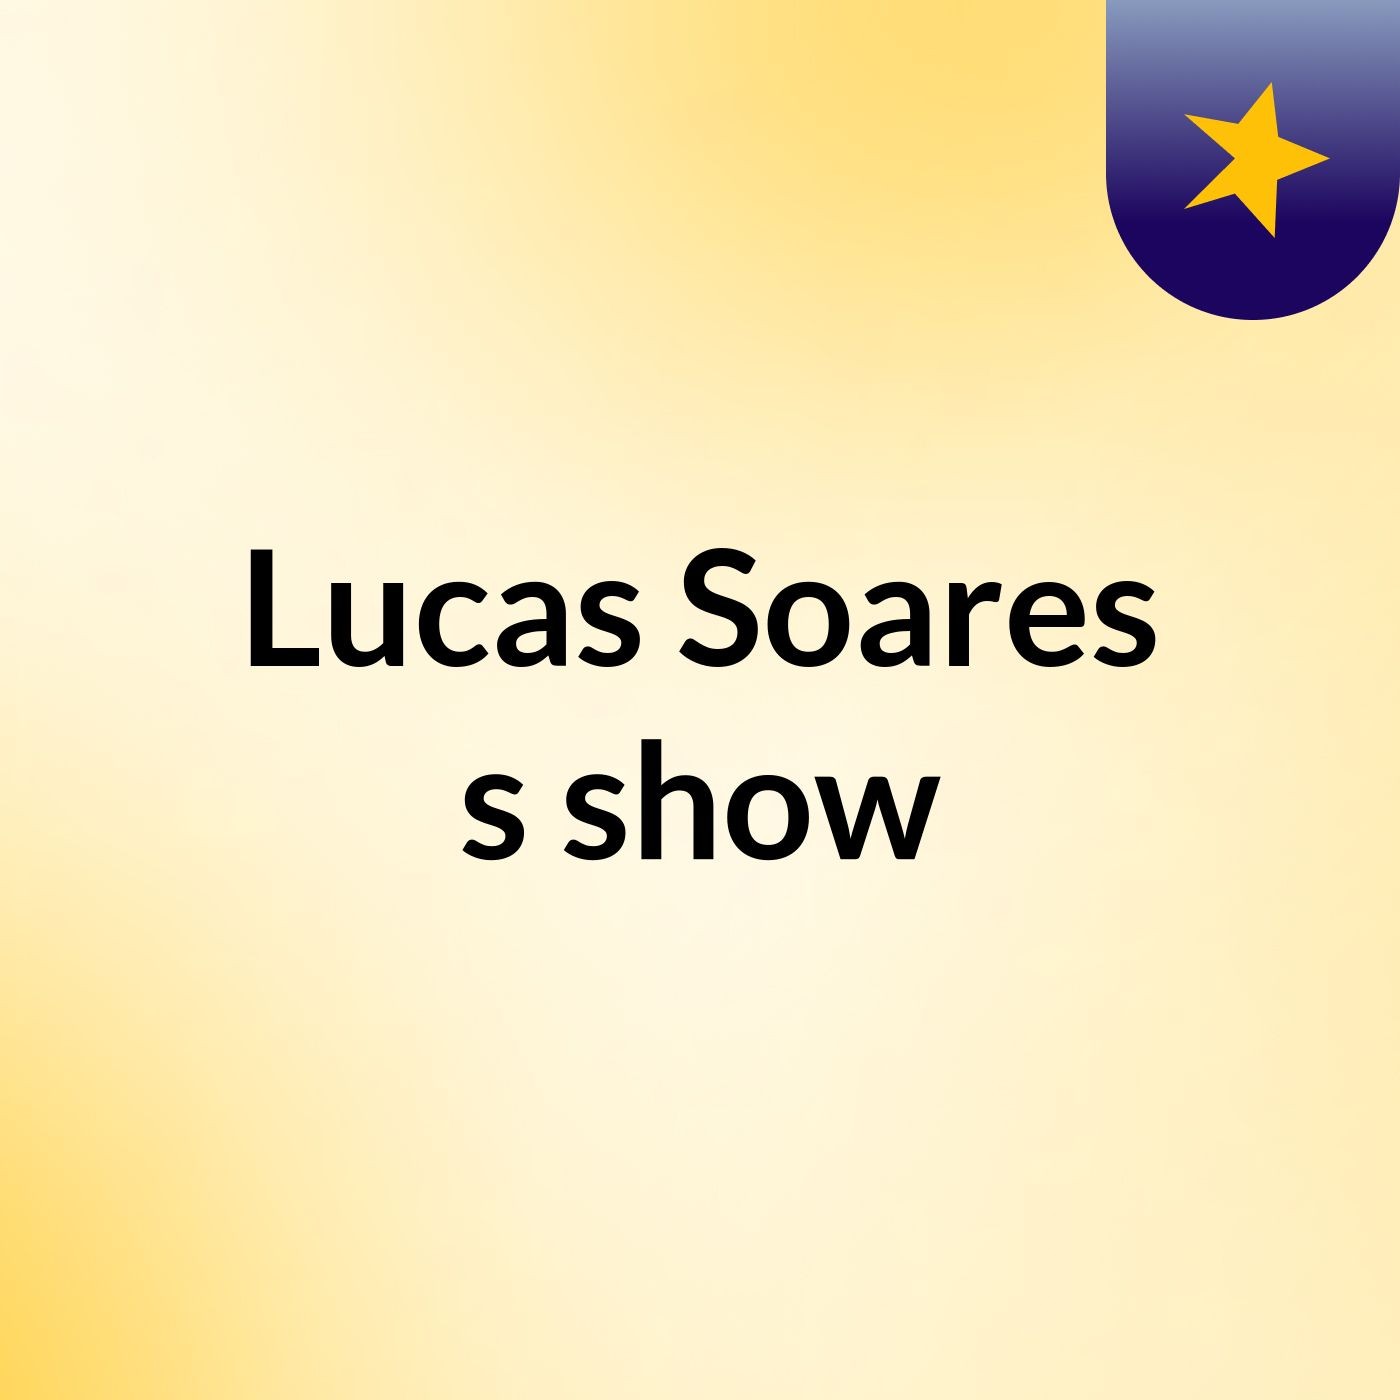 Lucas Soares's show